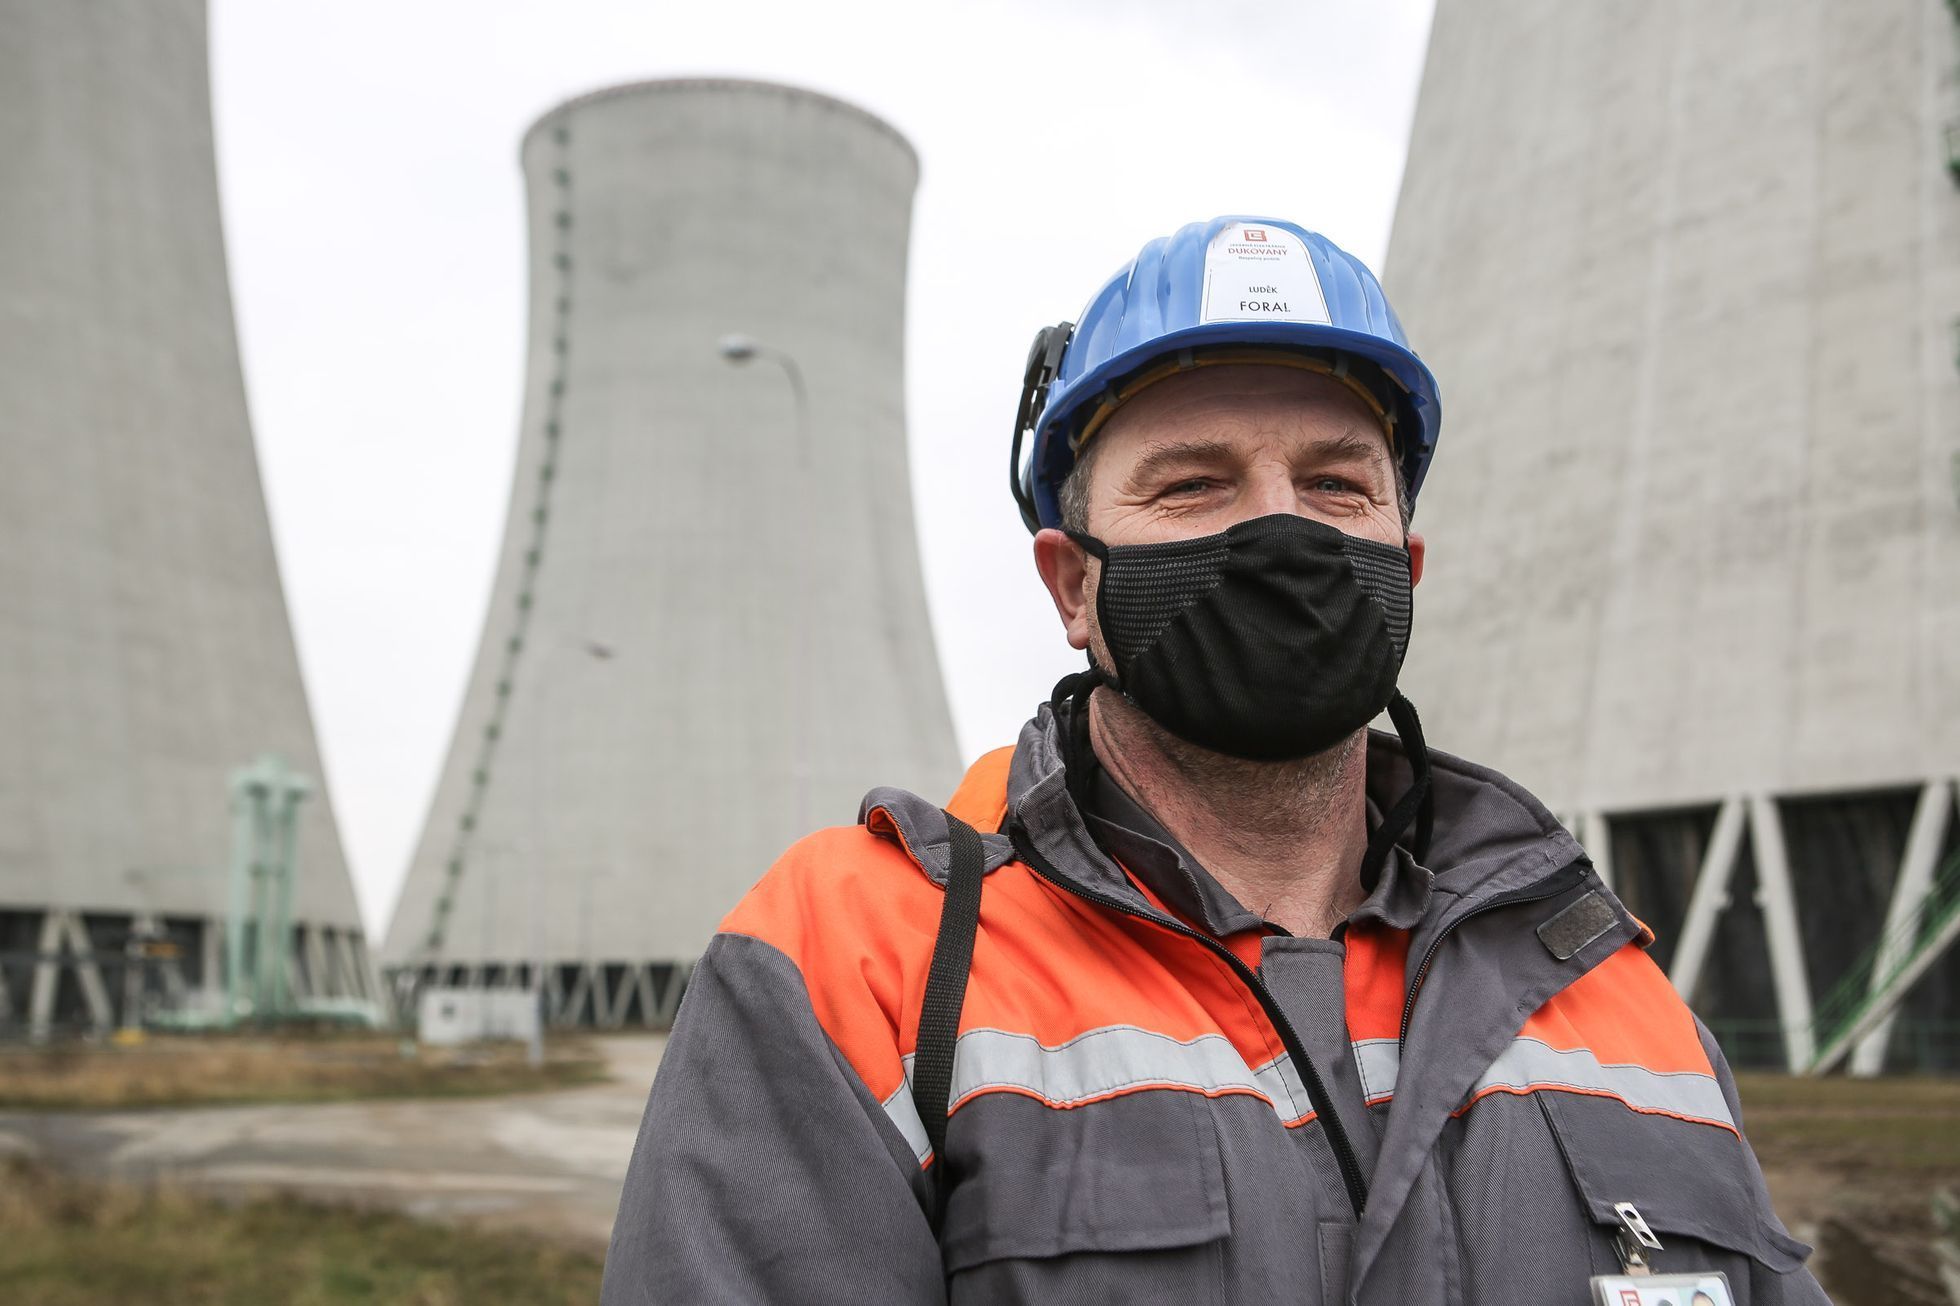 ČEZ Jaderná elektrárna Dukovany, pandemie, práce, energetika, bezpečnost, koronavir